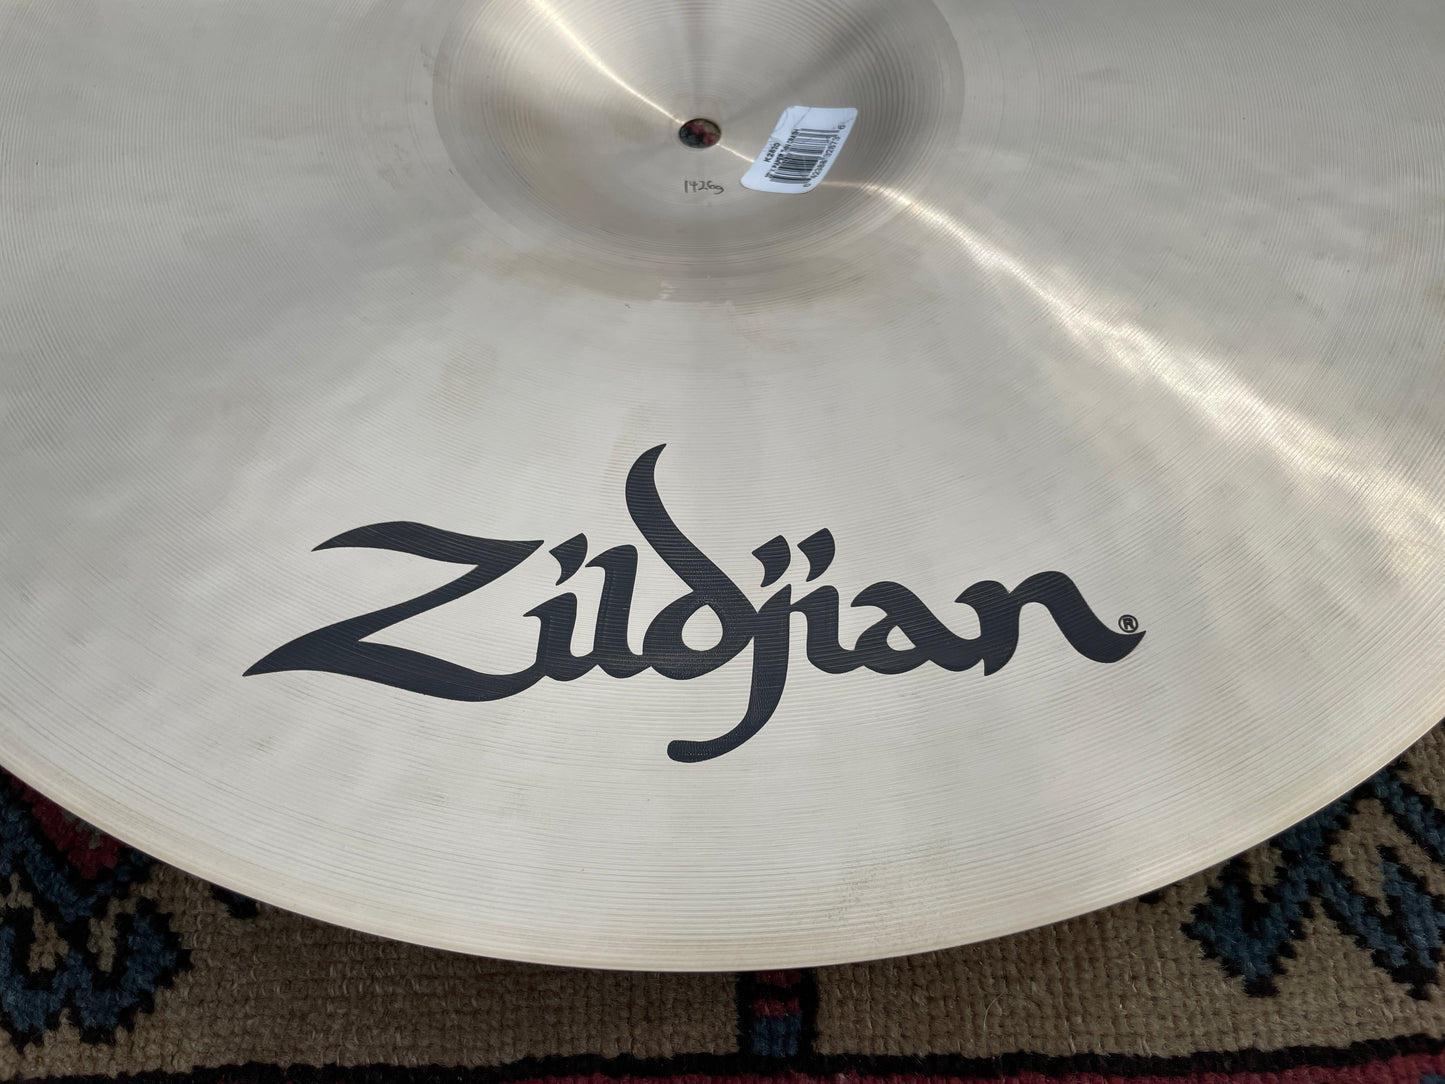 20" Zildjian K Paper Thin Crash Cymbal 1426g *Video Demo*